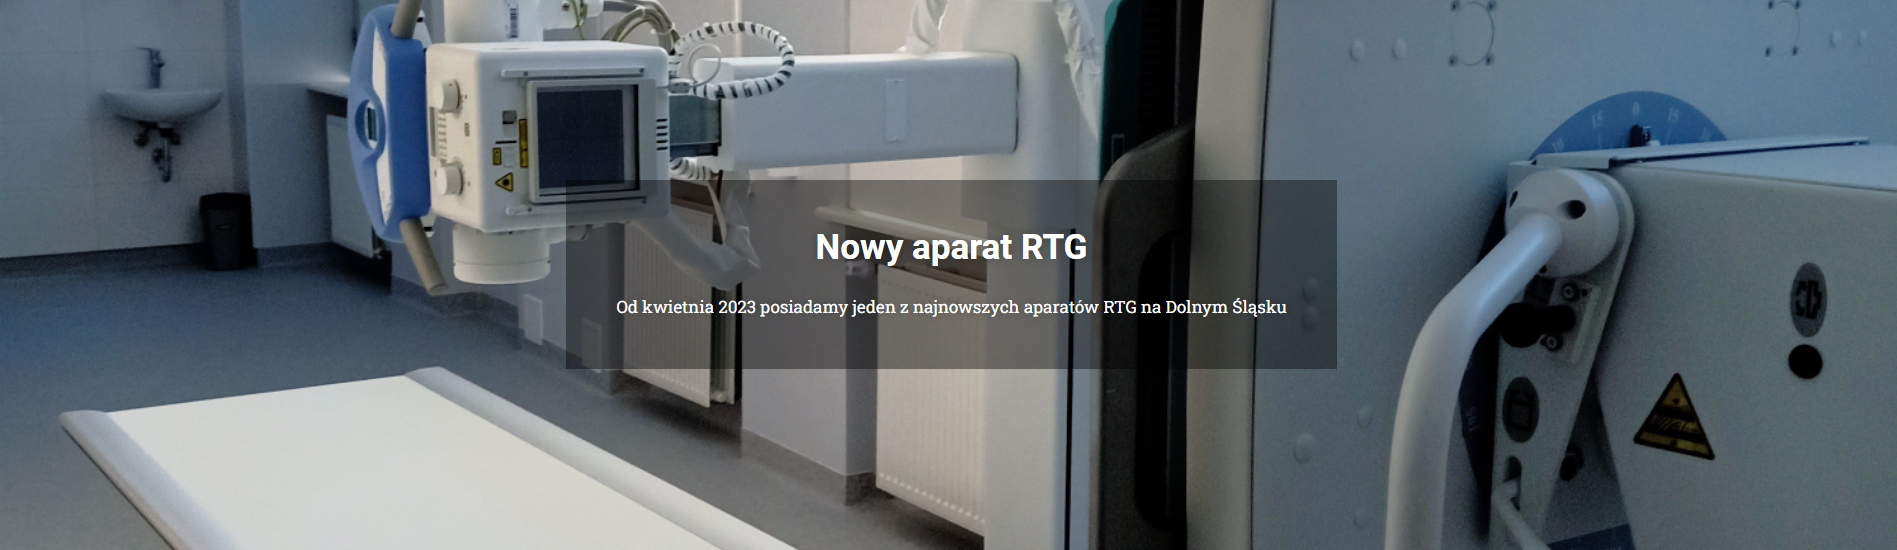 Aparat RTG w pracowni z treścią "Nowy aparat RTG. Od kwietnia 2023 posiadamy jeden z najnowszych aparatów RTG na Dolnym Śląsku".